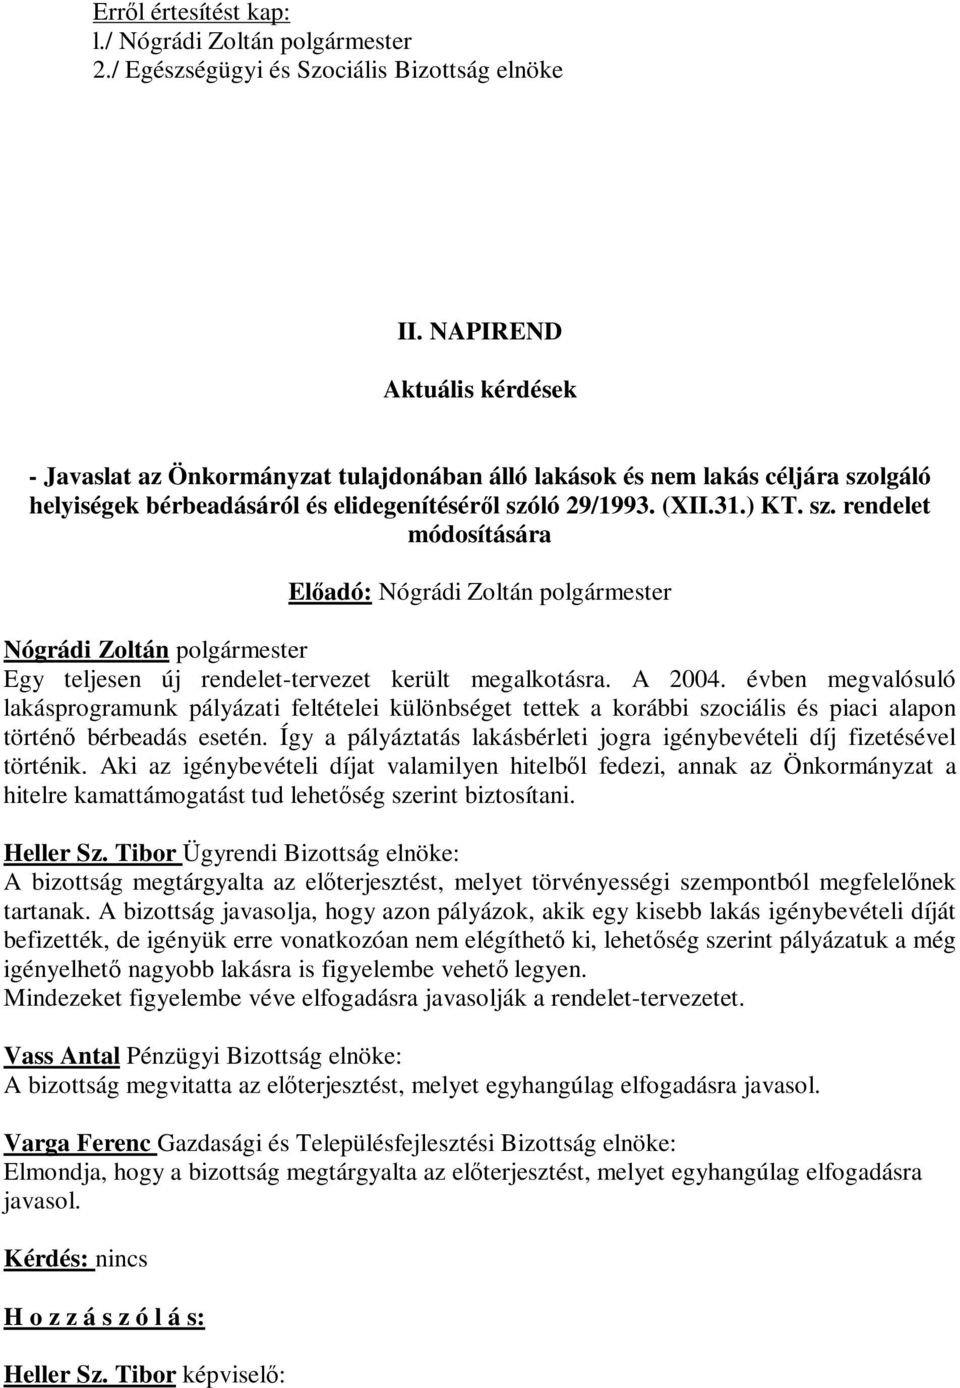 lgáló helyiségek bérbeadásáról és elidegenítéséről szóló 29/1993. (XII.31.) KT. sz. rendelet módosítására Nógrádi Zoltán polgármester Egy teljesen új rendelet-tervezet került megalkotásra. A 2004.